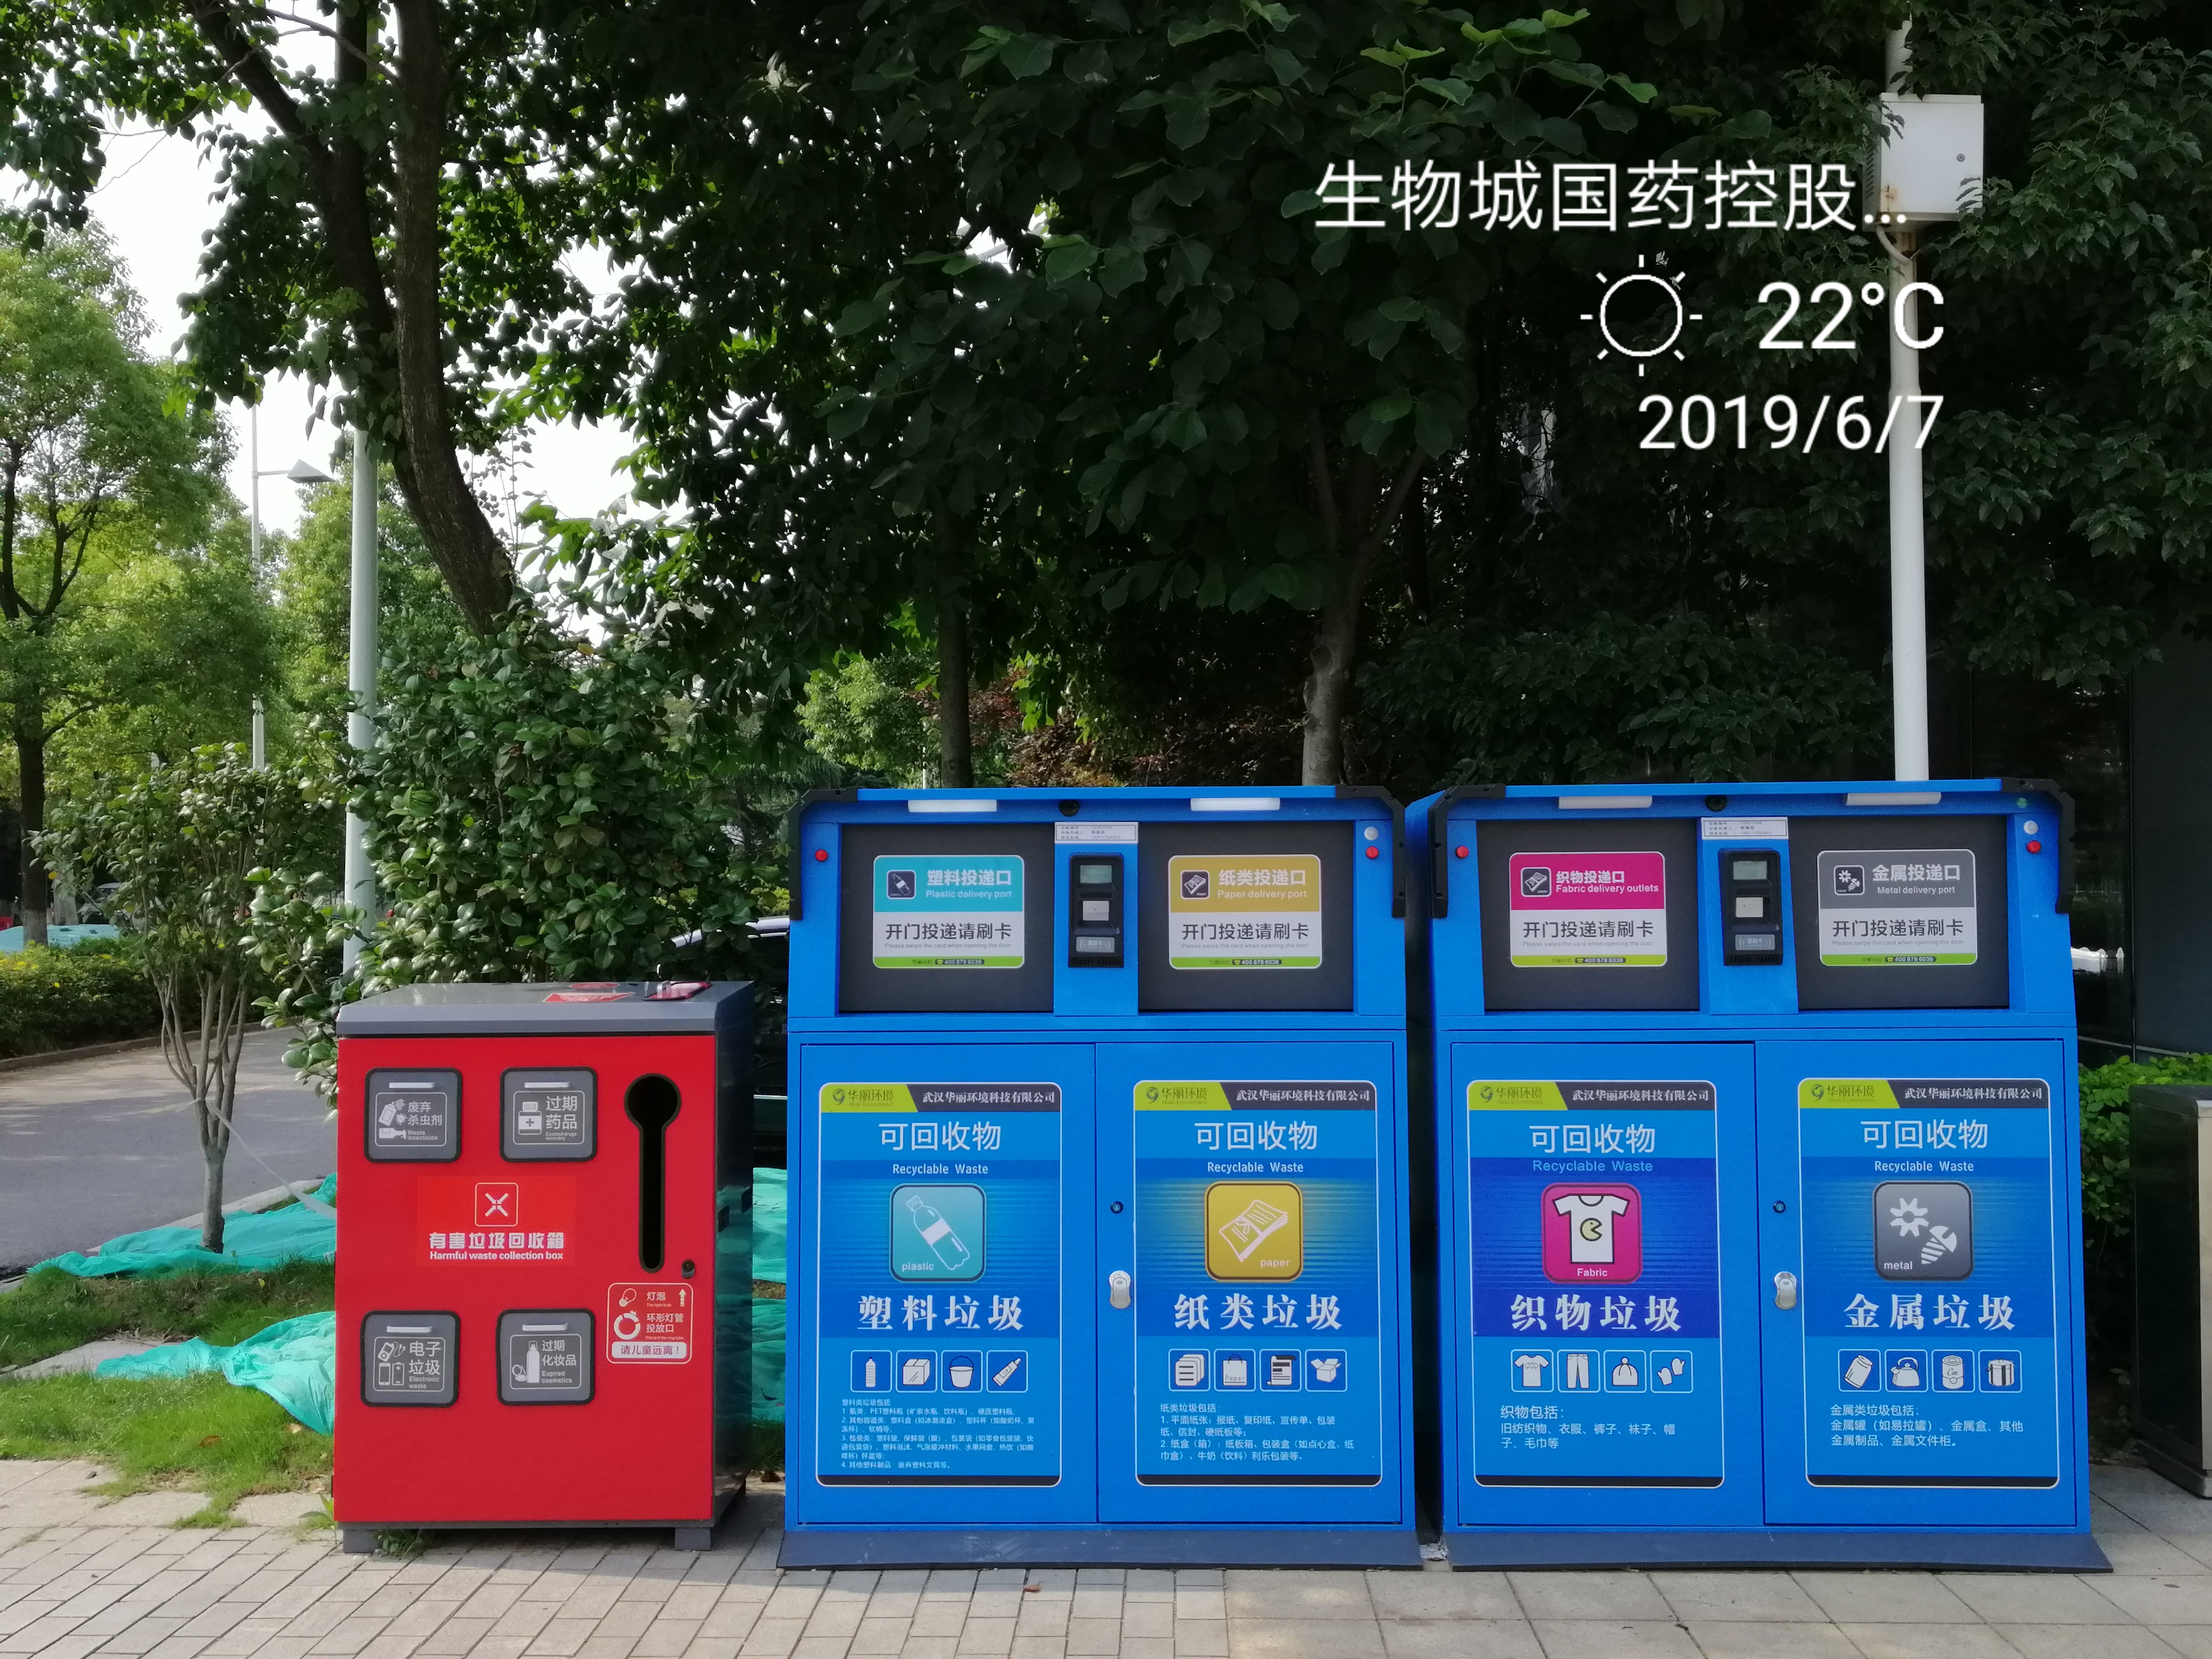 武汉生物城垃圾分类智能回收设备展示